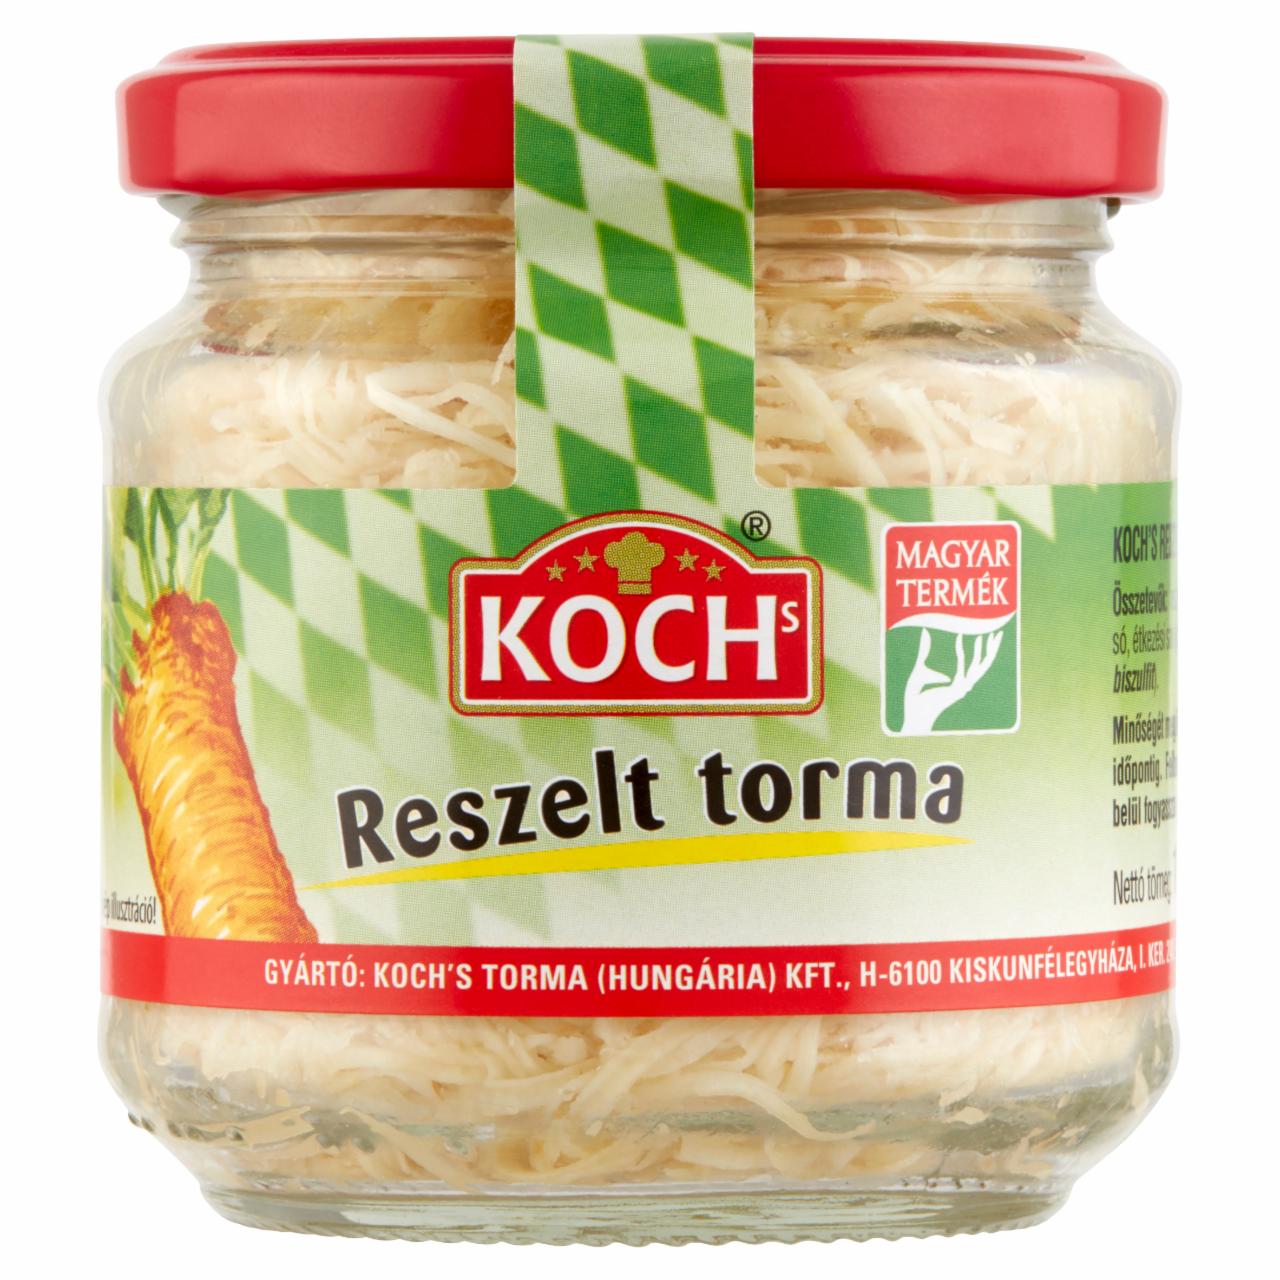 Képek - Koch's reszelt torma 110 g